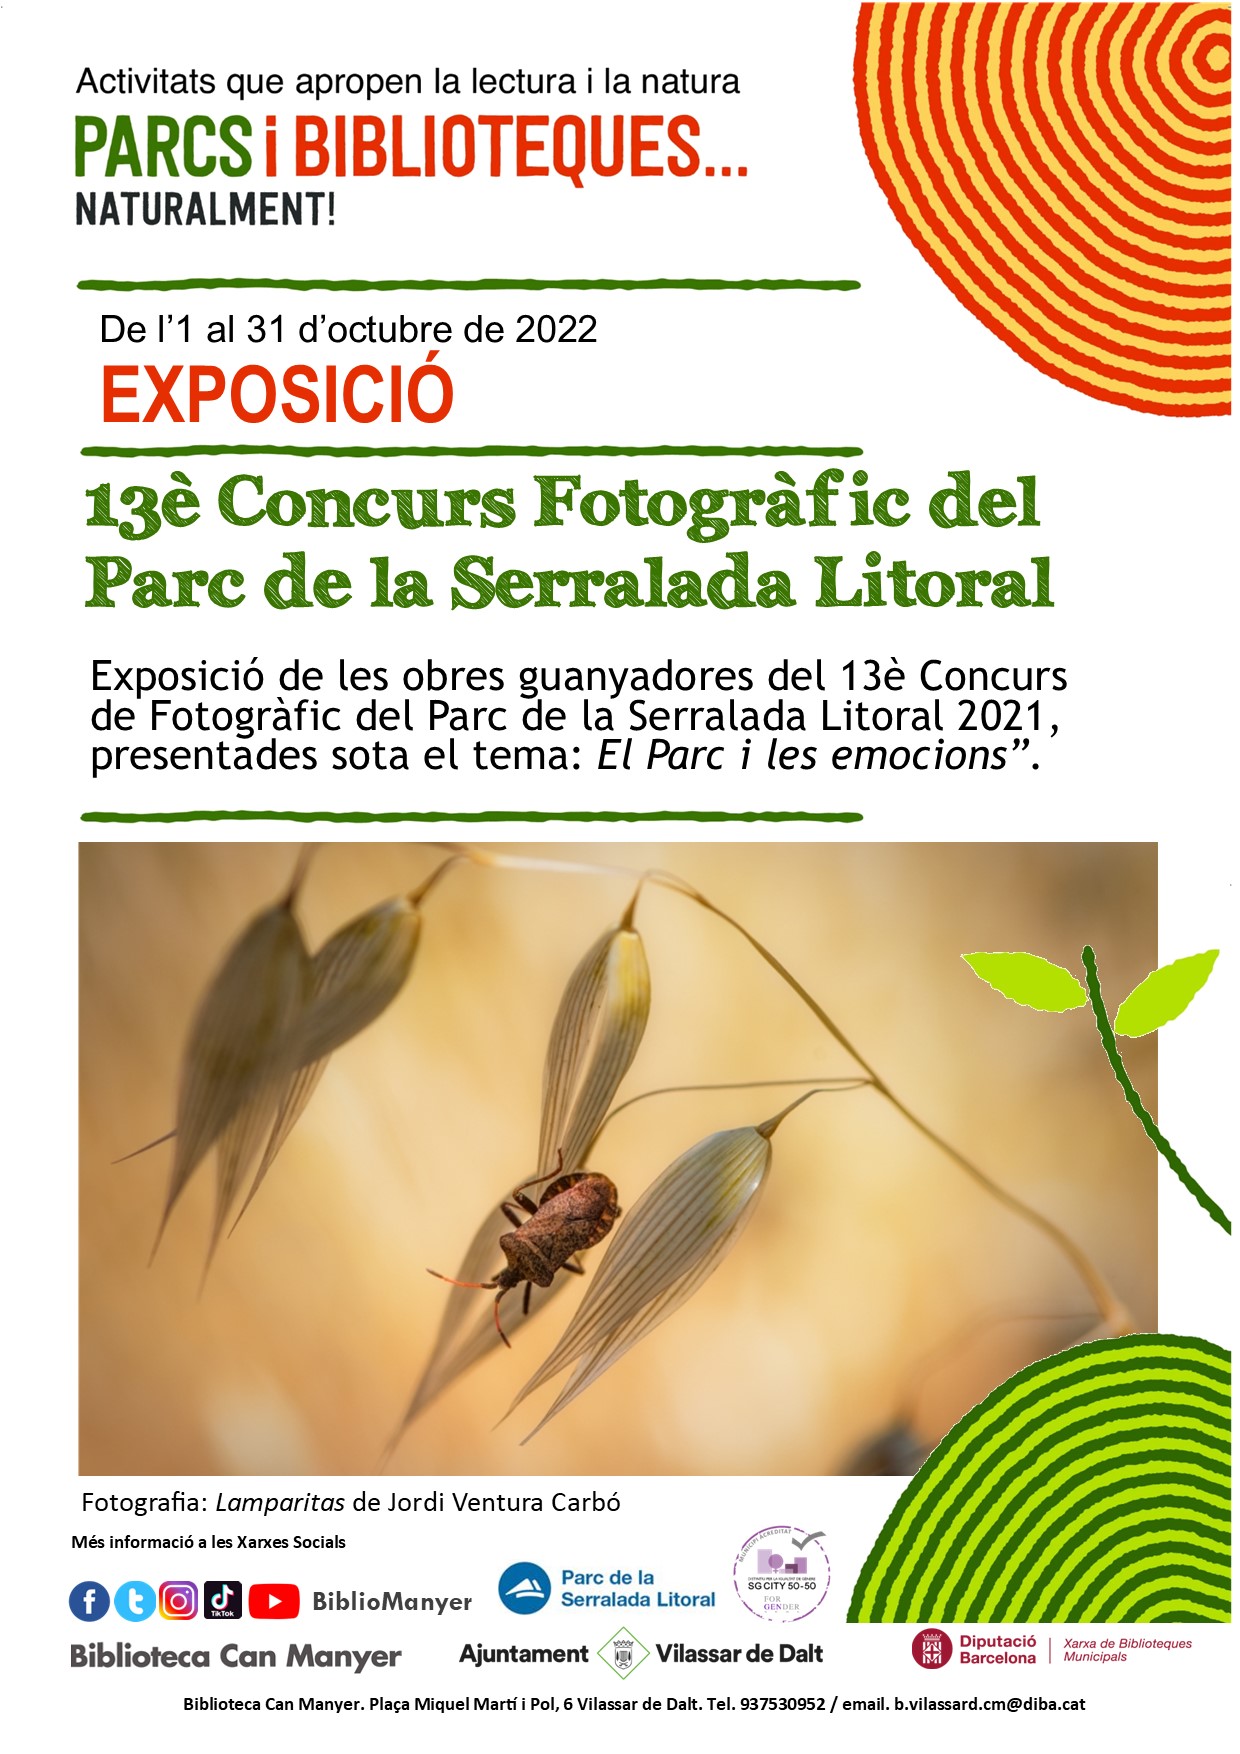 Exposició: '13è Concurs Fotogràfic del Parc de la Serralada Litoral'